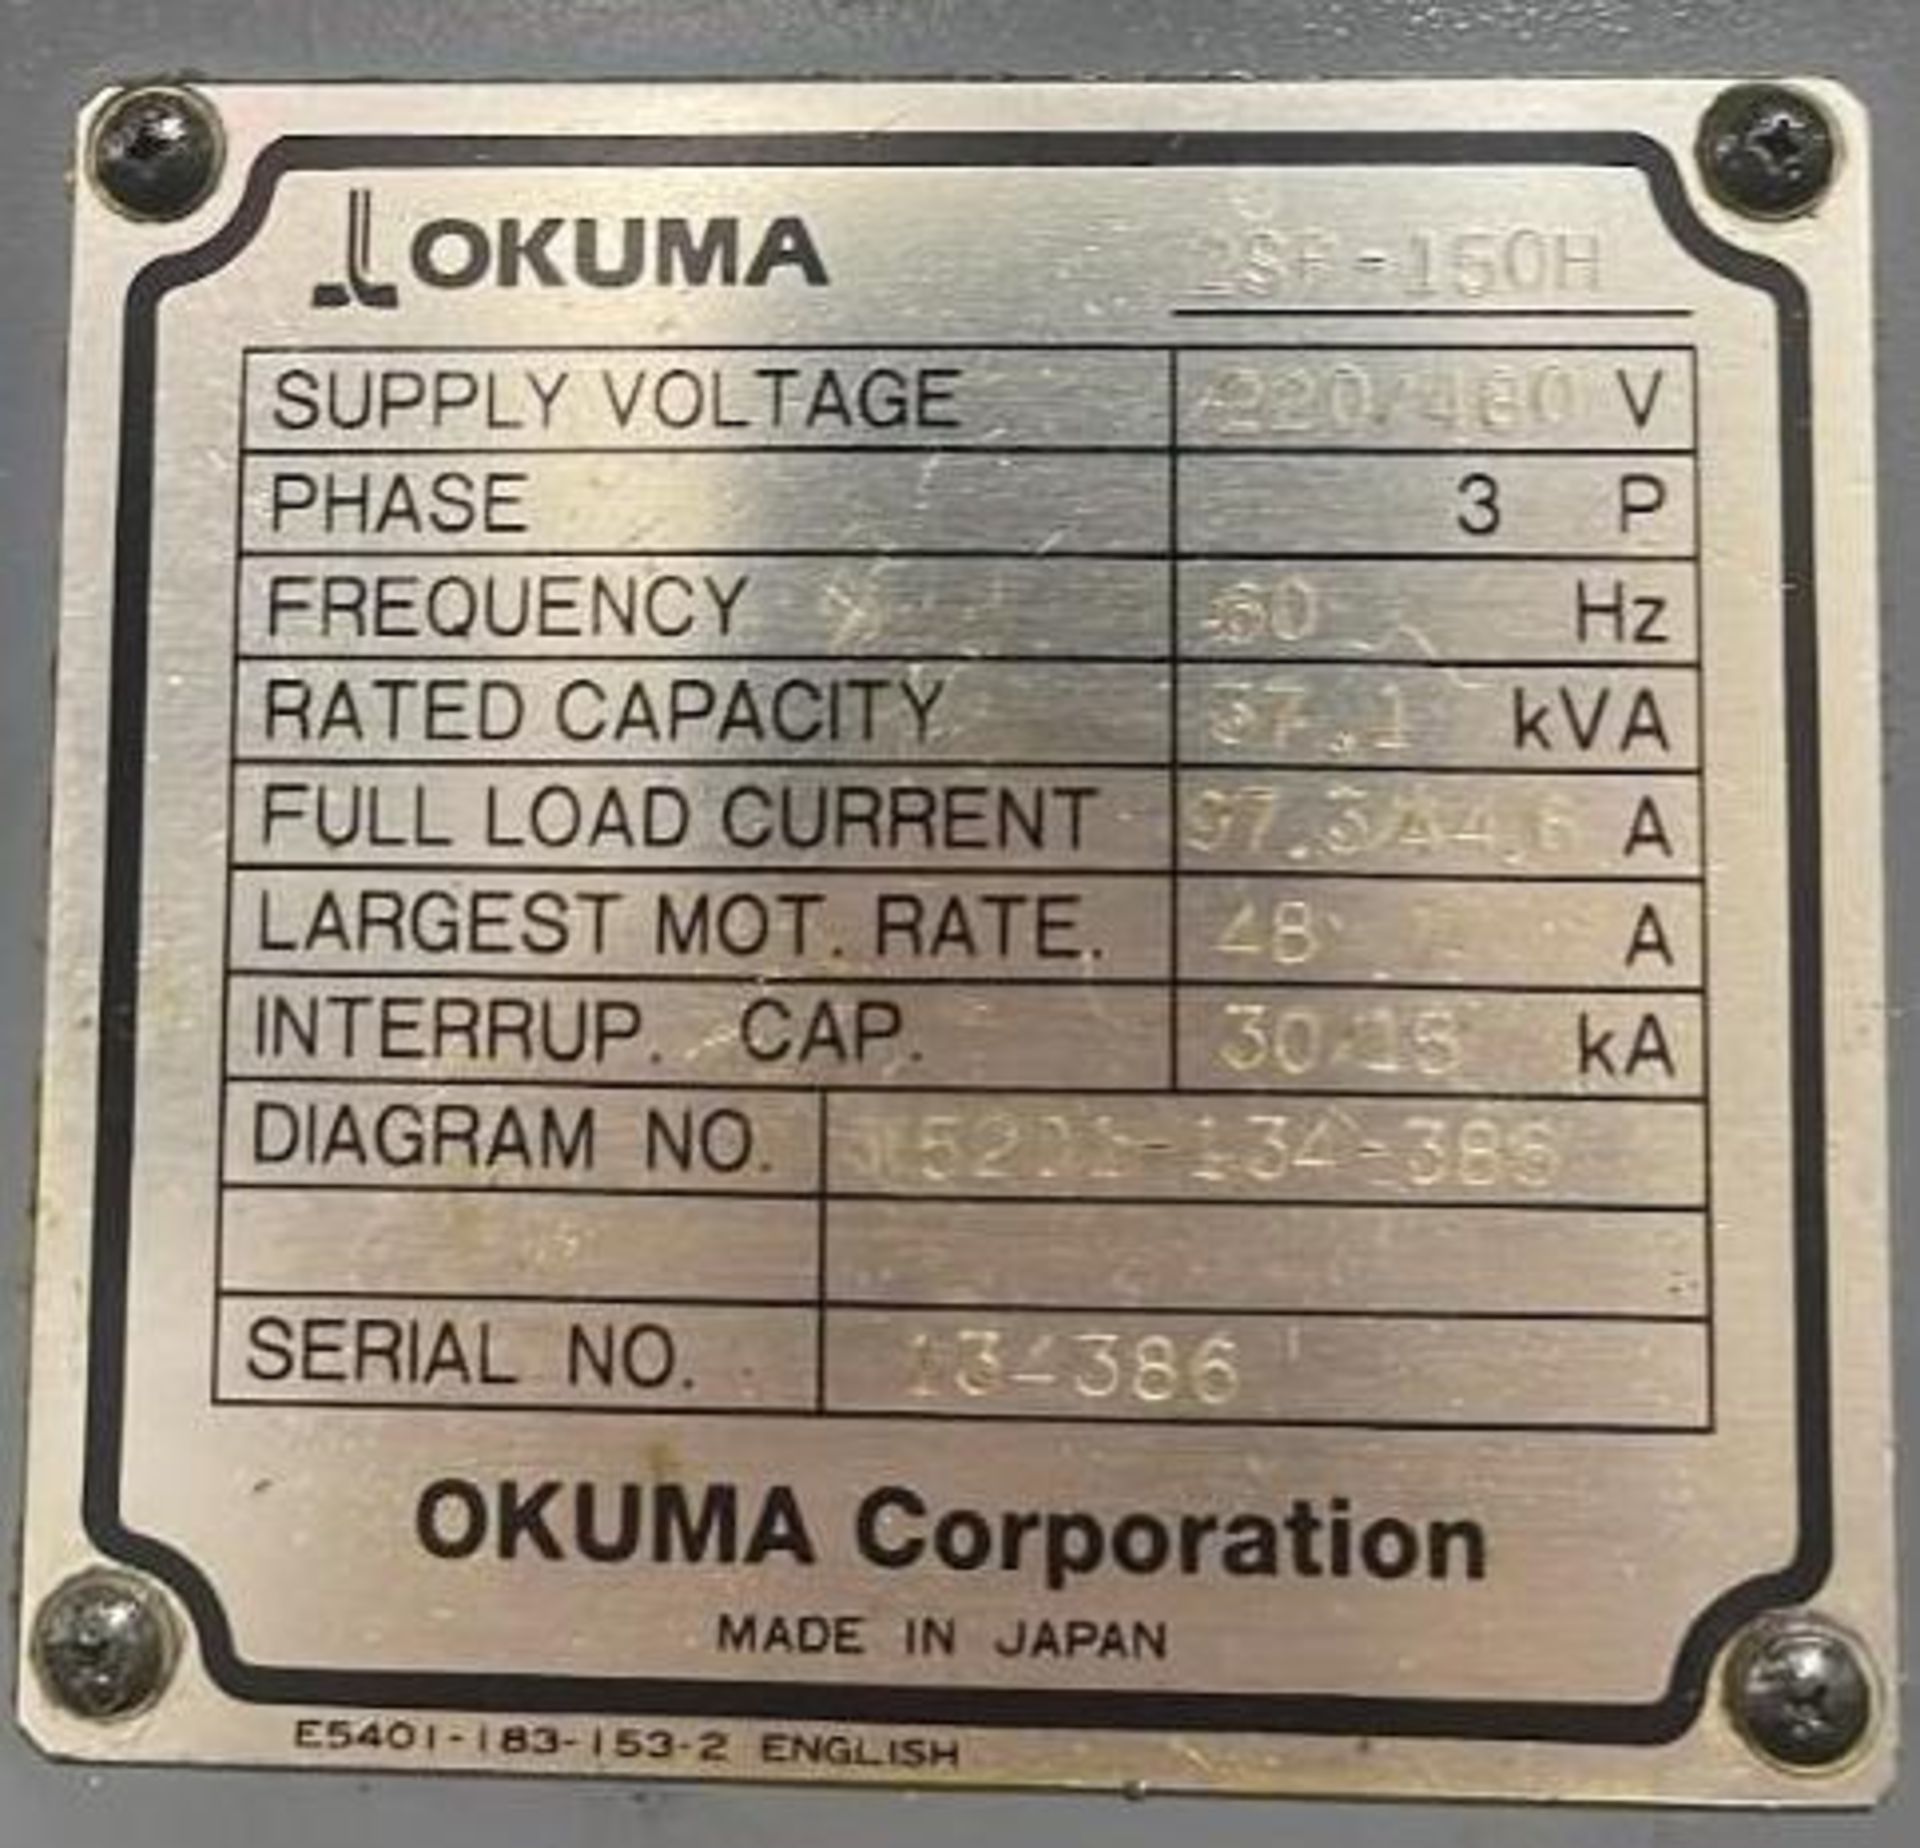 2007 Okuma 2SP-150H Twin Spindle CNC Lathe - Image 4 of 7